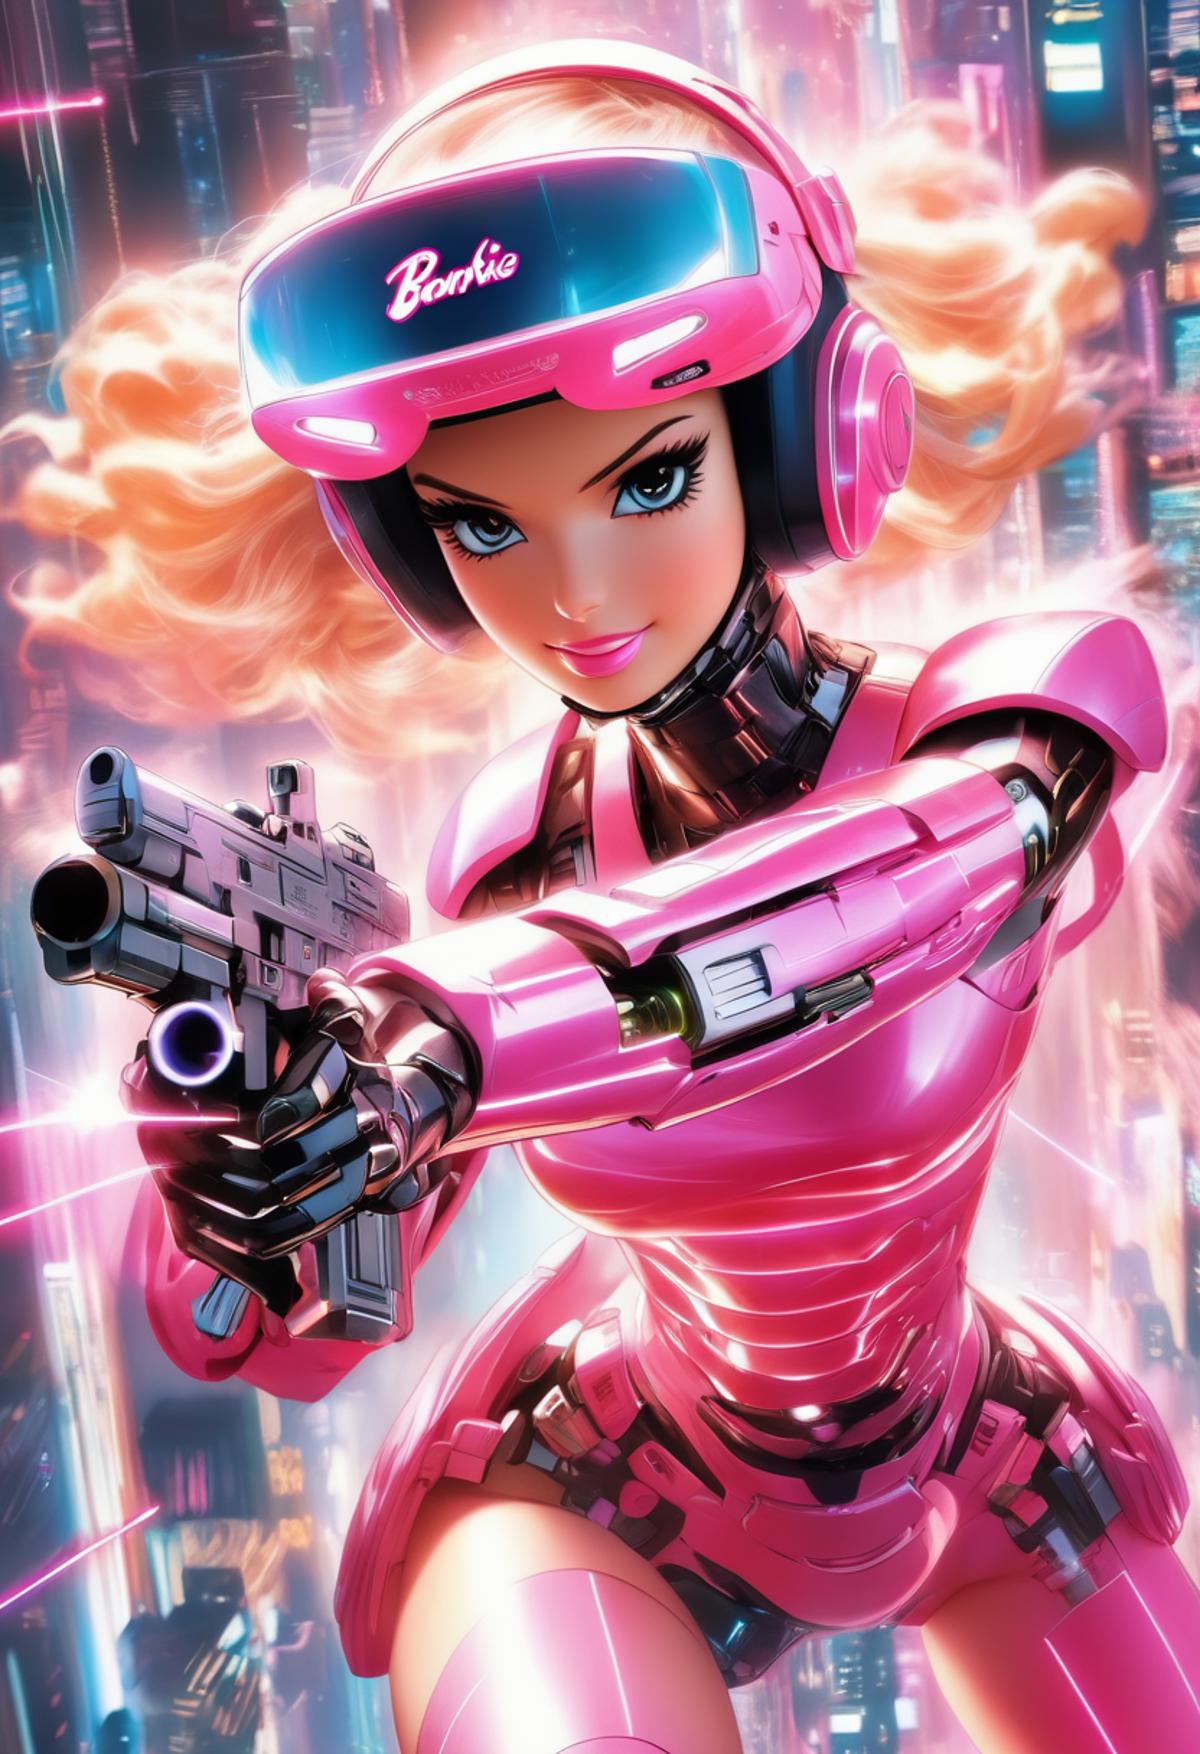 A cartoon robot girl in a pink suit holding a gun.